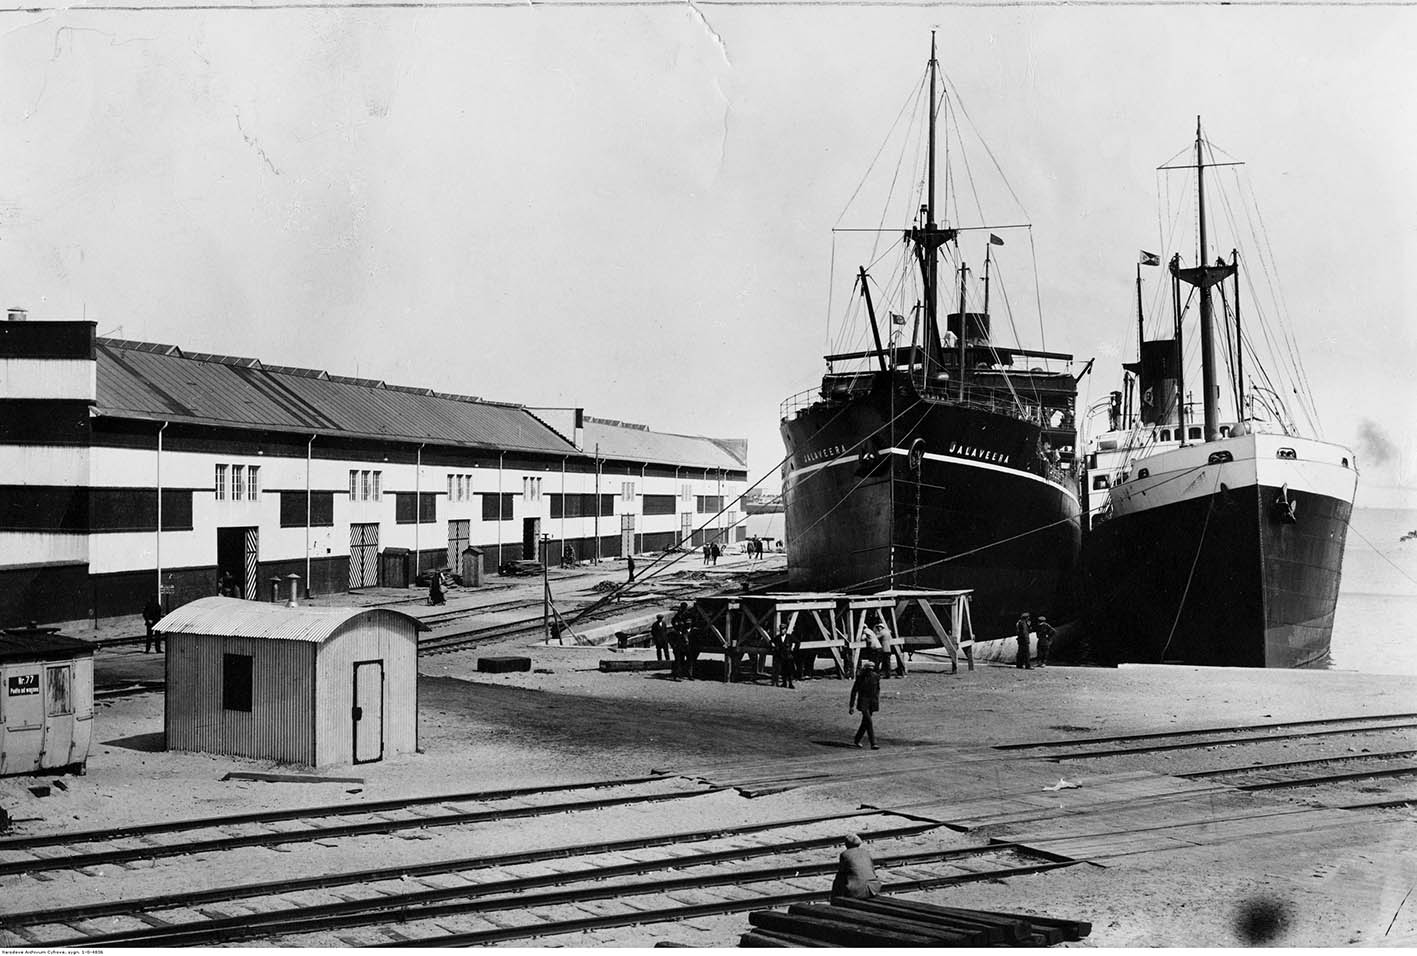 Statki - statki "Jalaveera" oraz "Premier" (własność Polsko-Brytyjskiego Towarzystwa w Gdyni) stojące przy nabrzeżu w basenie marszałka Piłsudskiego.